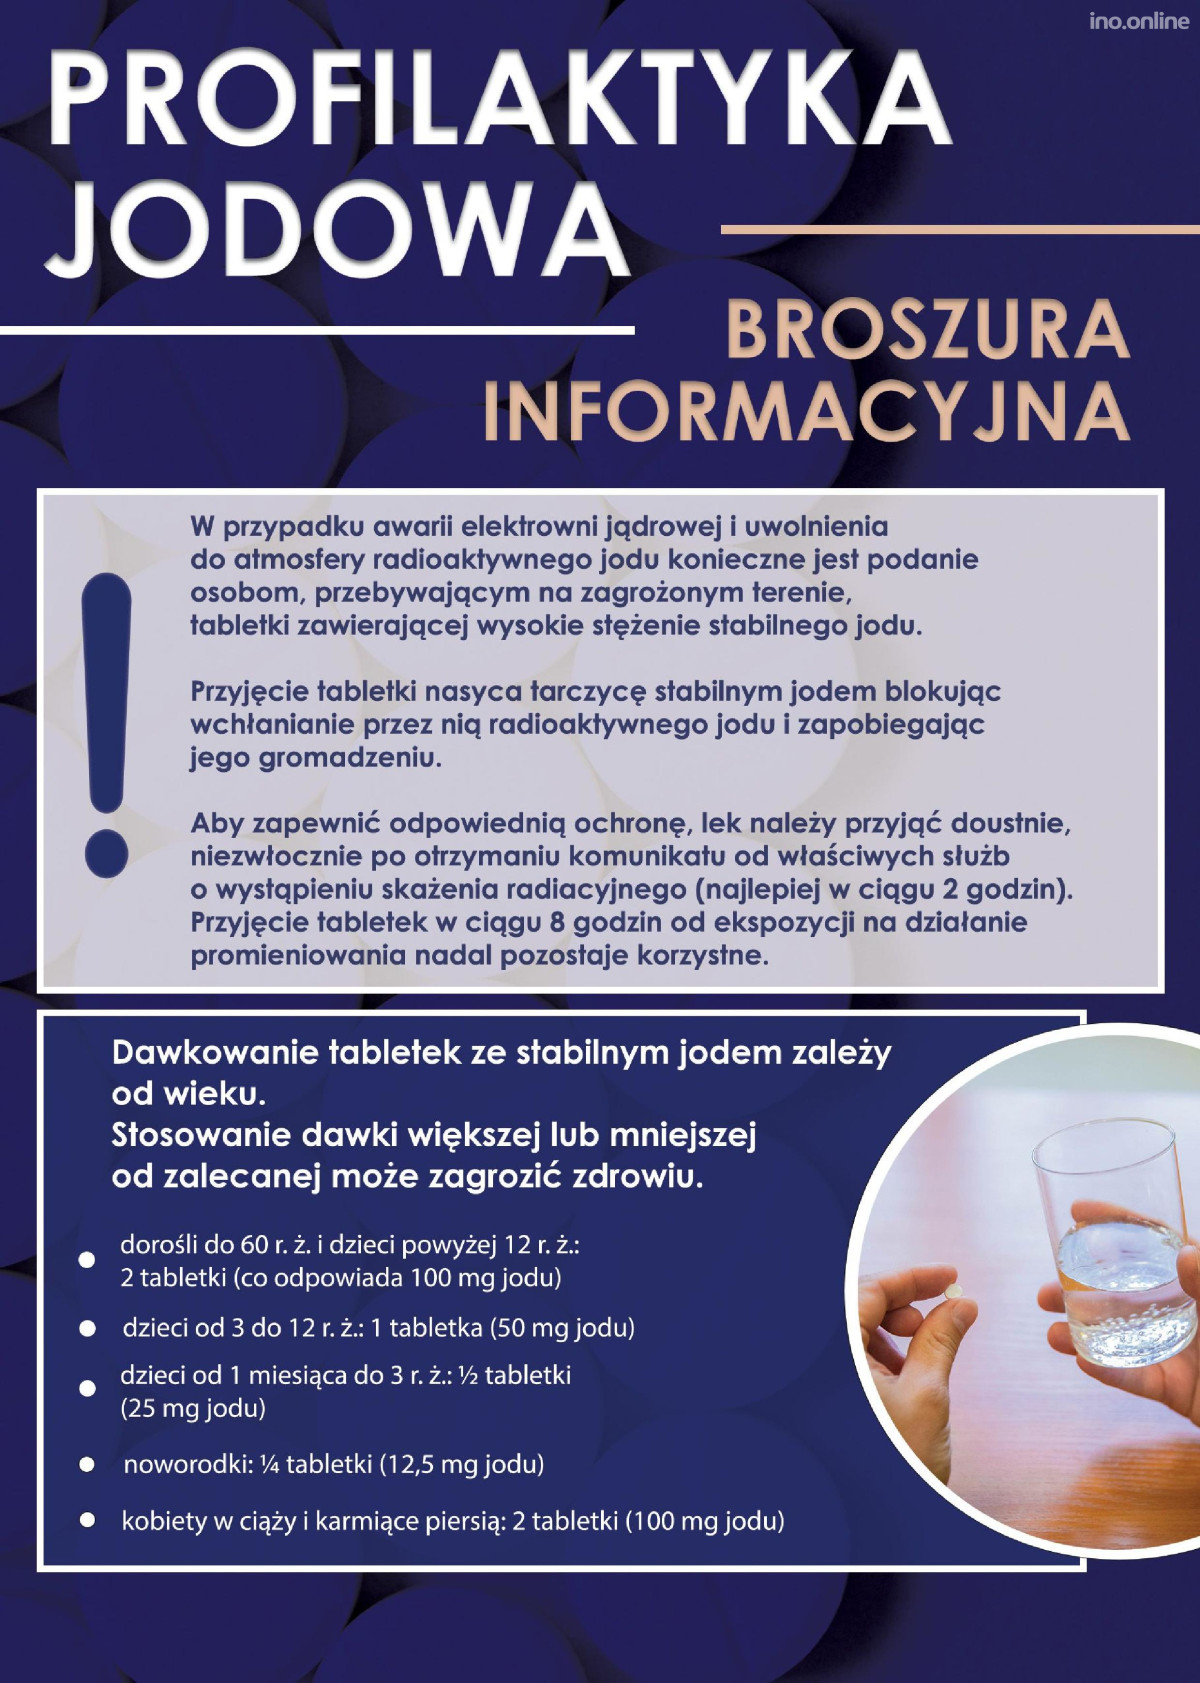 Broszura_informacyjna-page-001